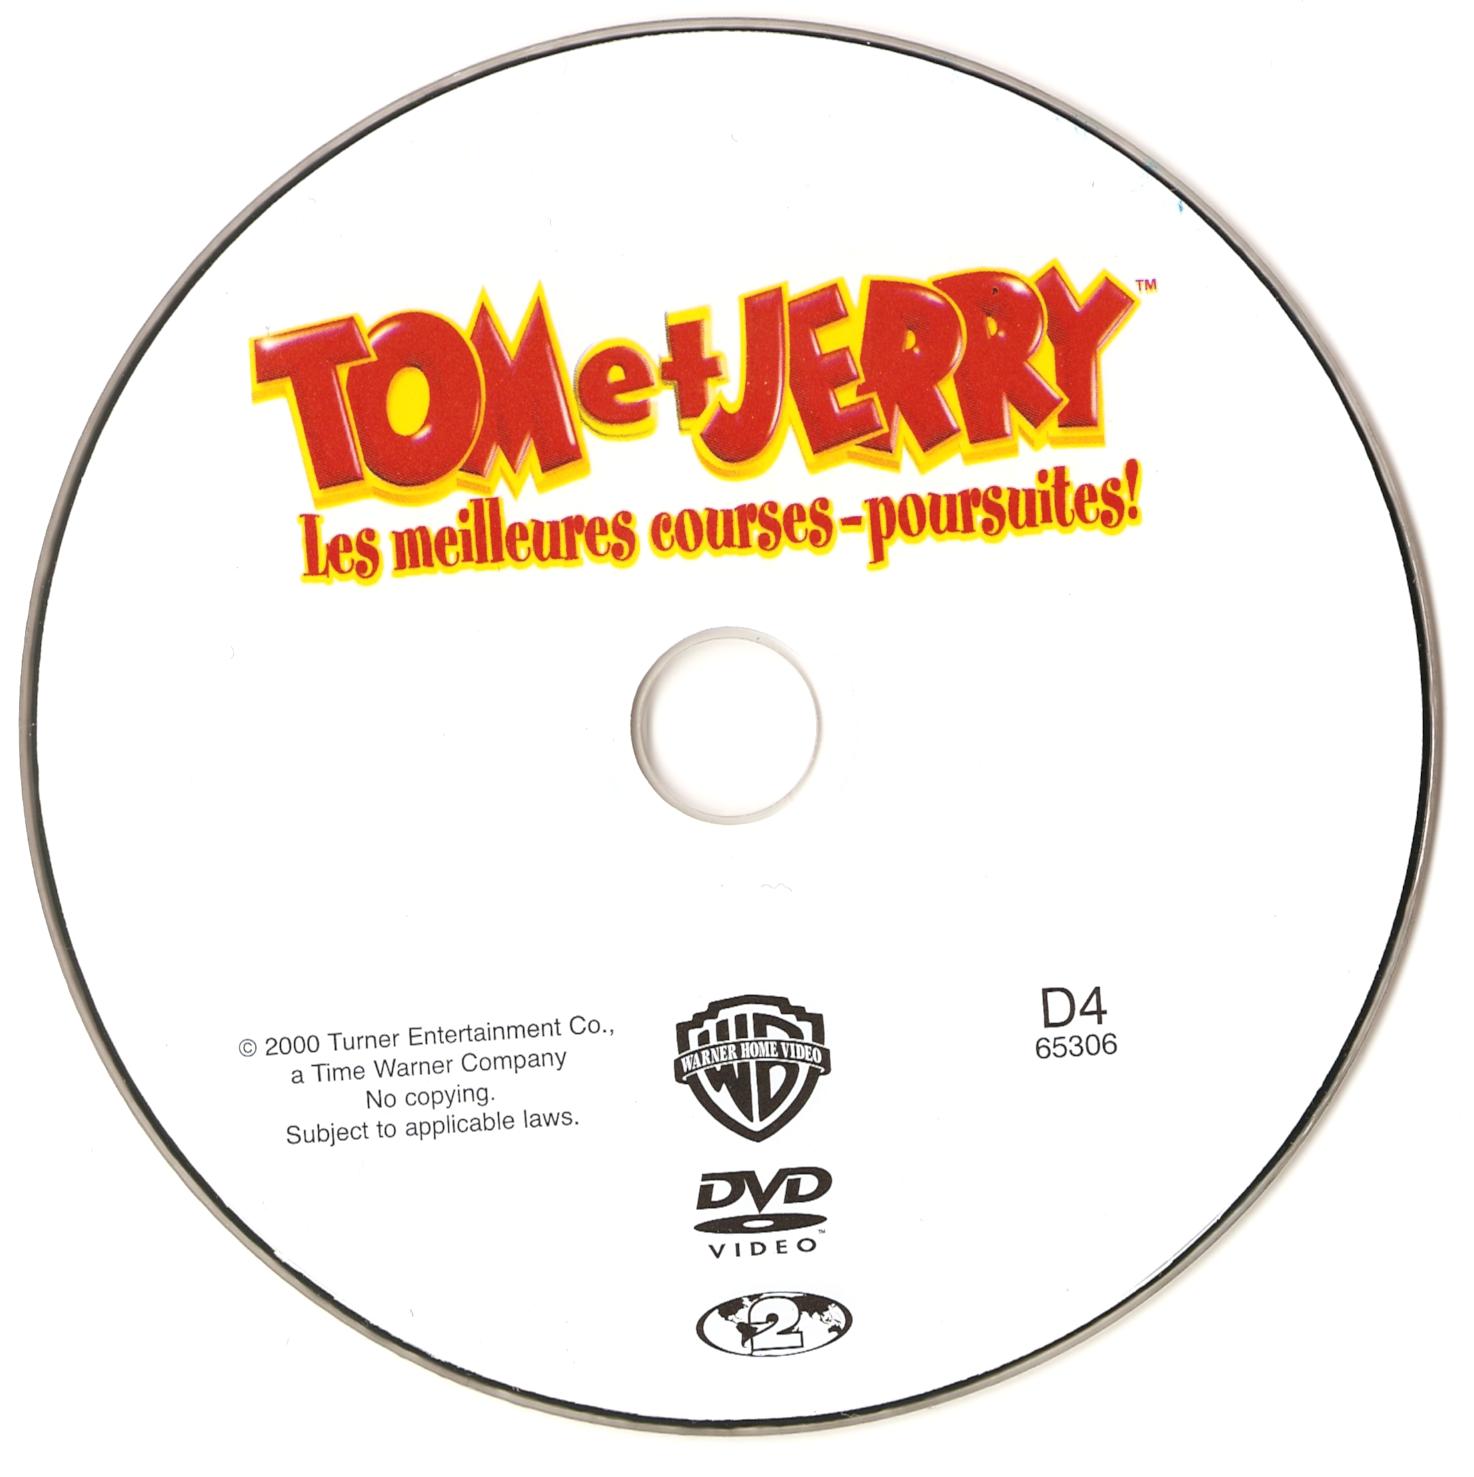 Tom et Jerry Les meilleures courses-poursuites